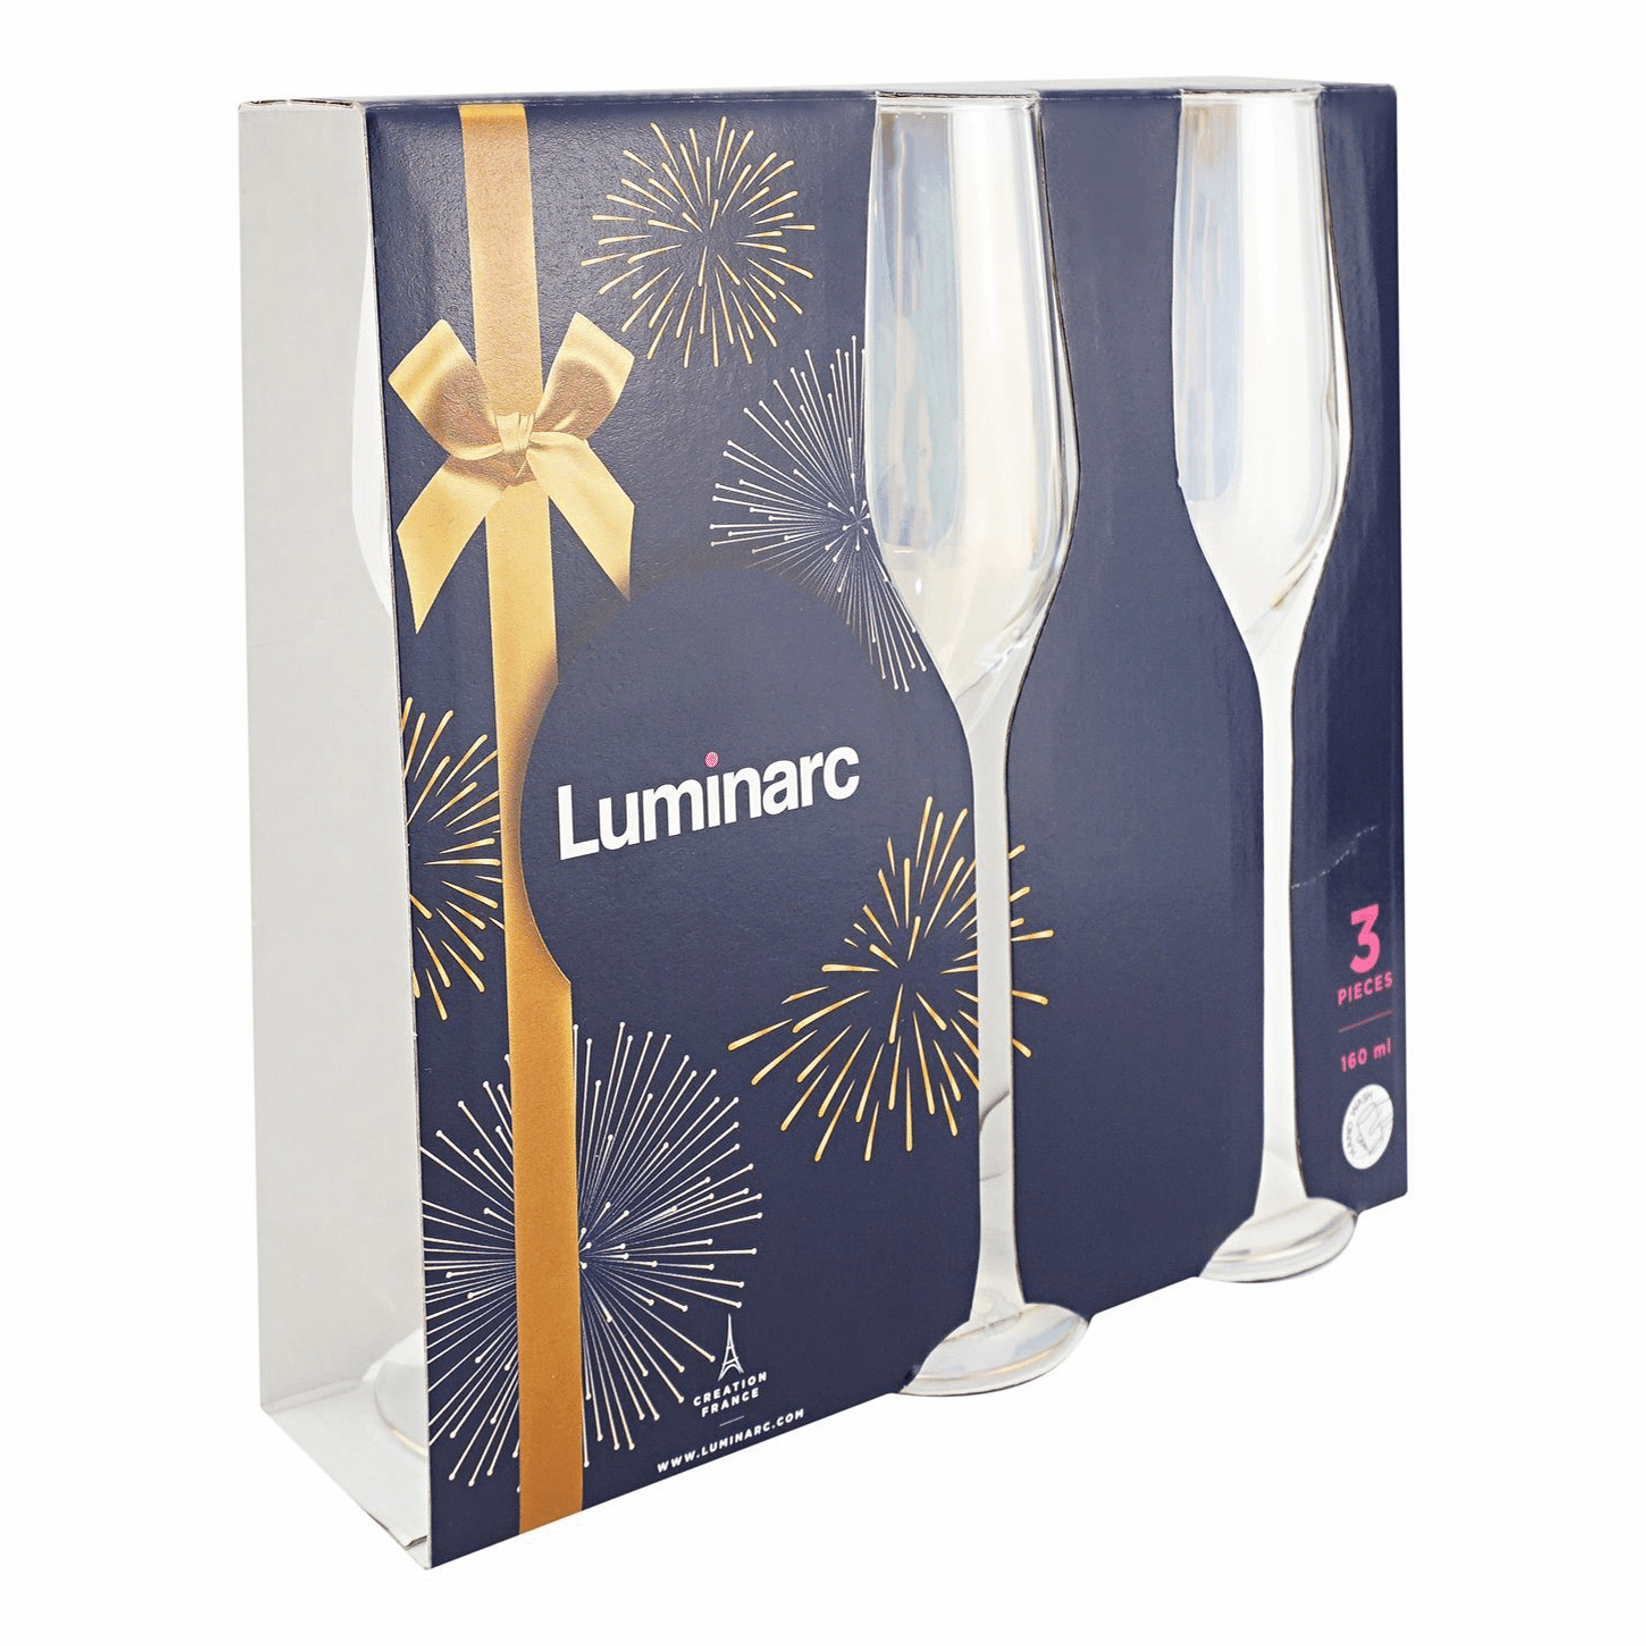 Набор бокалов для шампанского Luminarc Celeste Golden Chameleon 160 мл 3 шт, цвет золотистый - фото 2